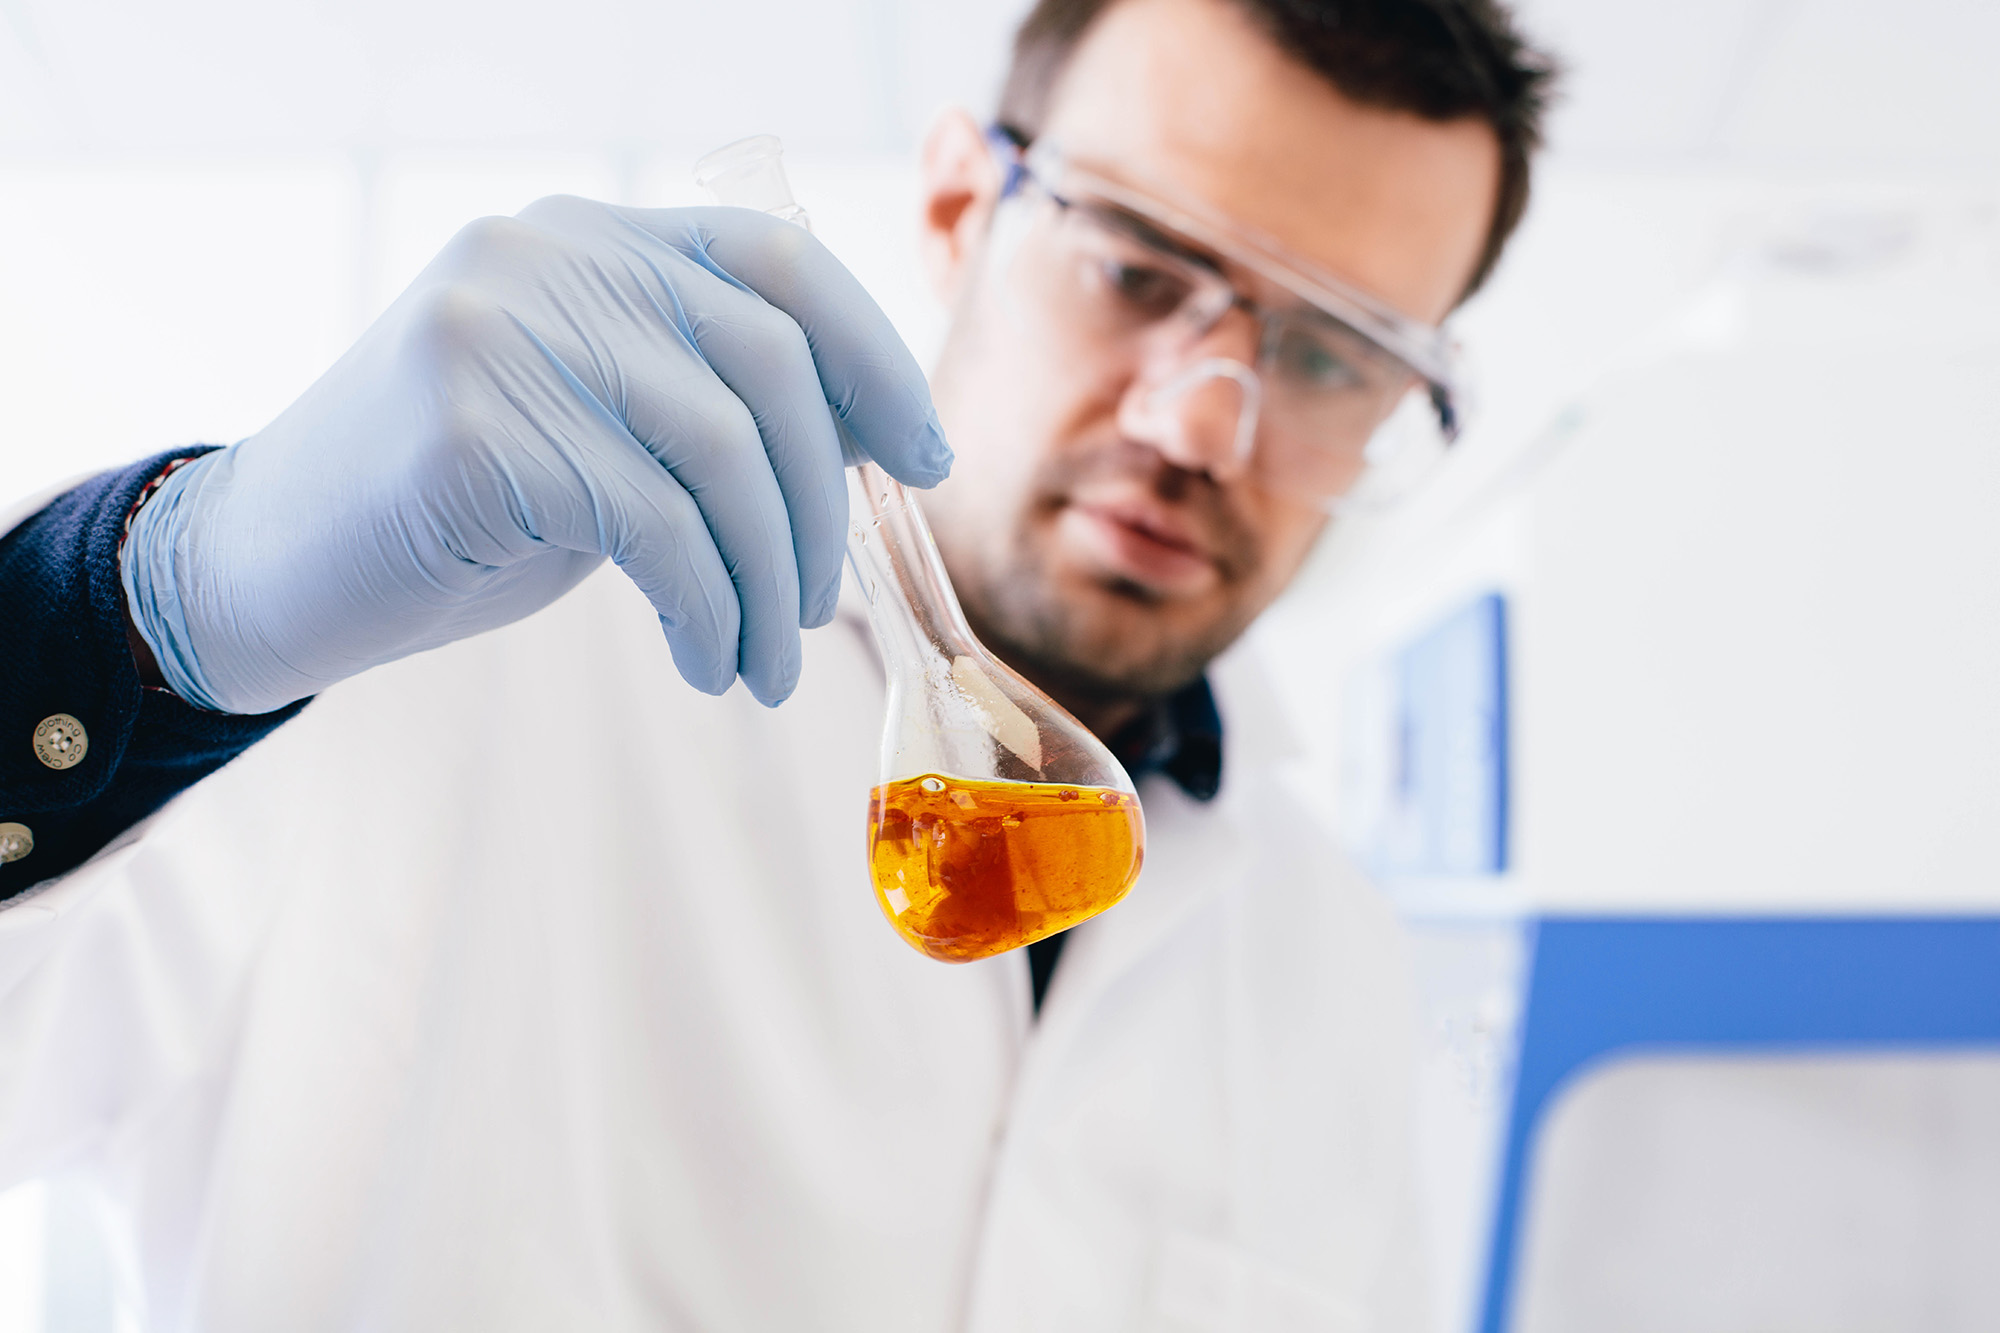 Scientist holding glass beaker containing clear orange liquid